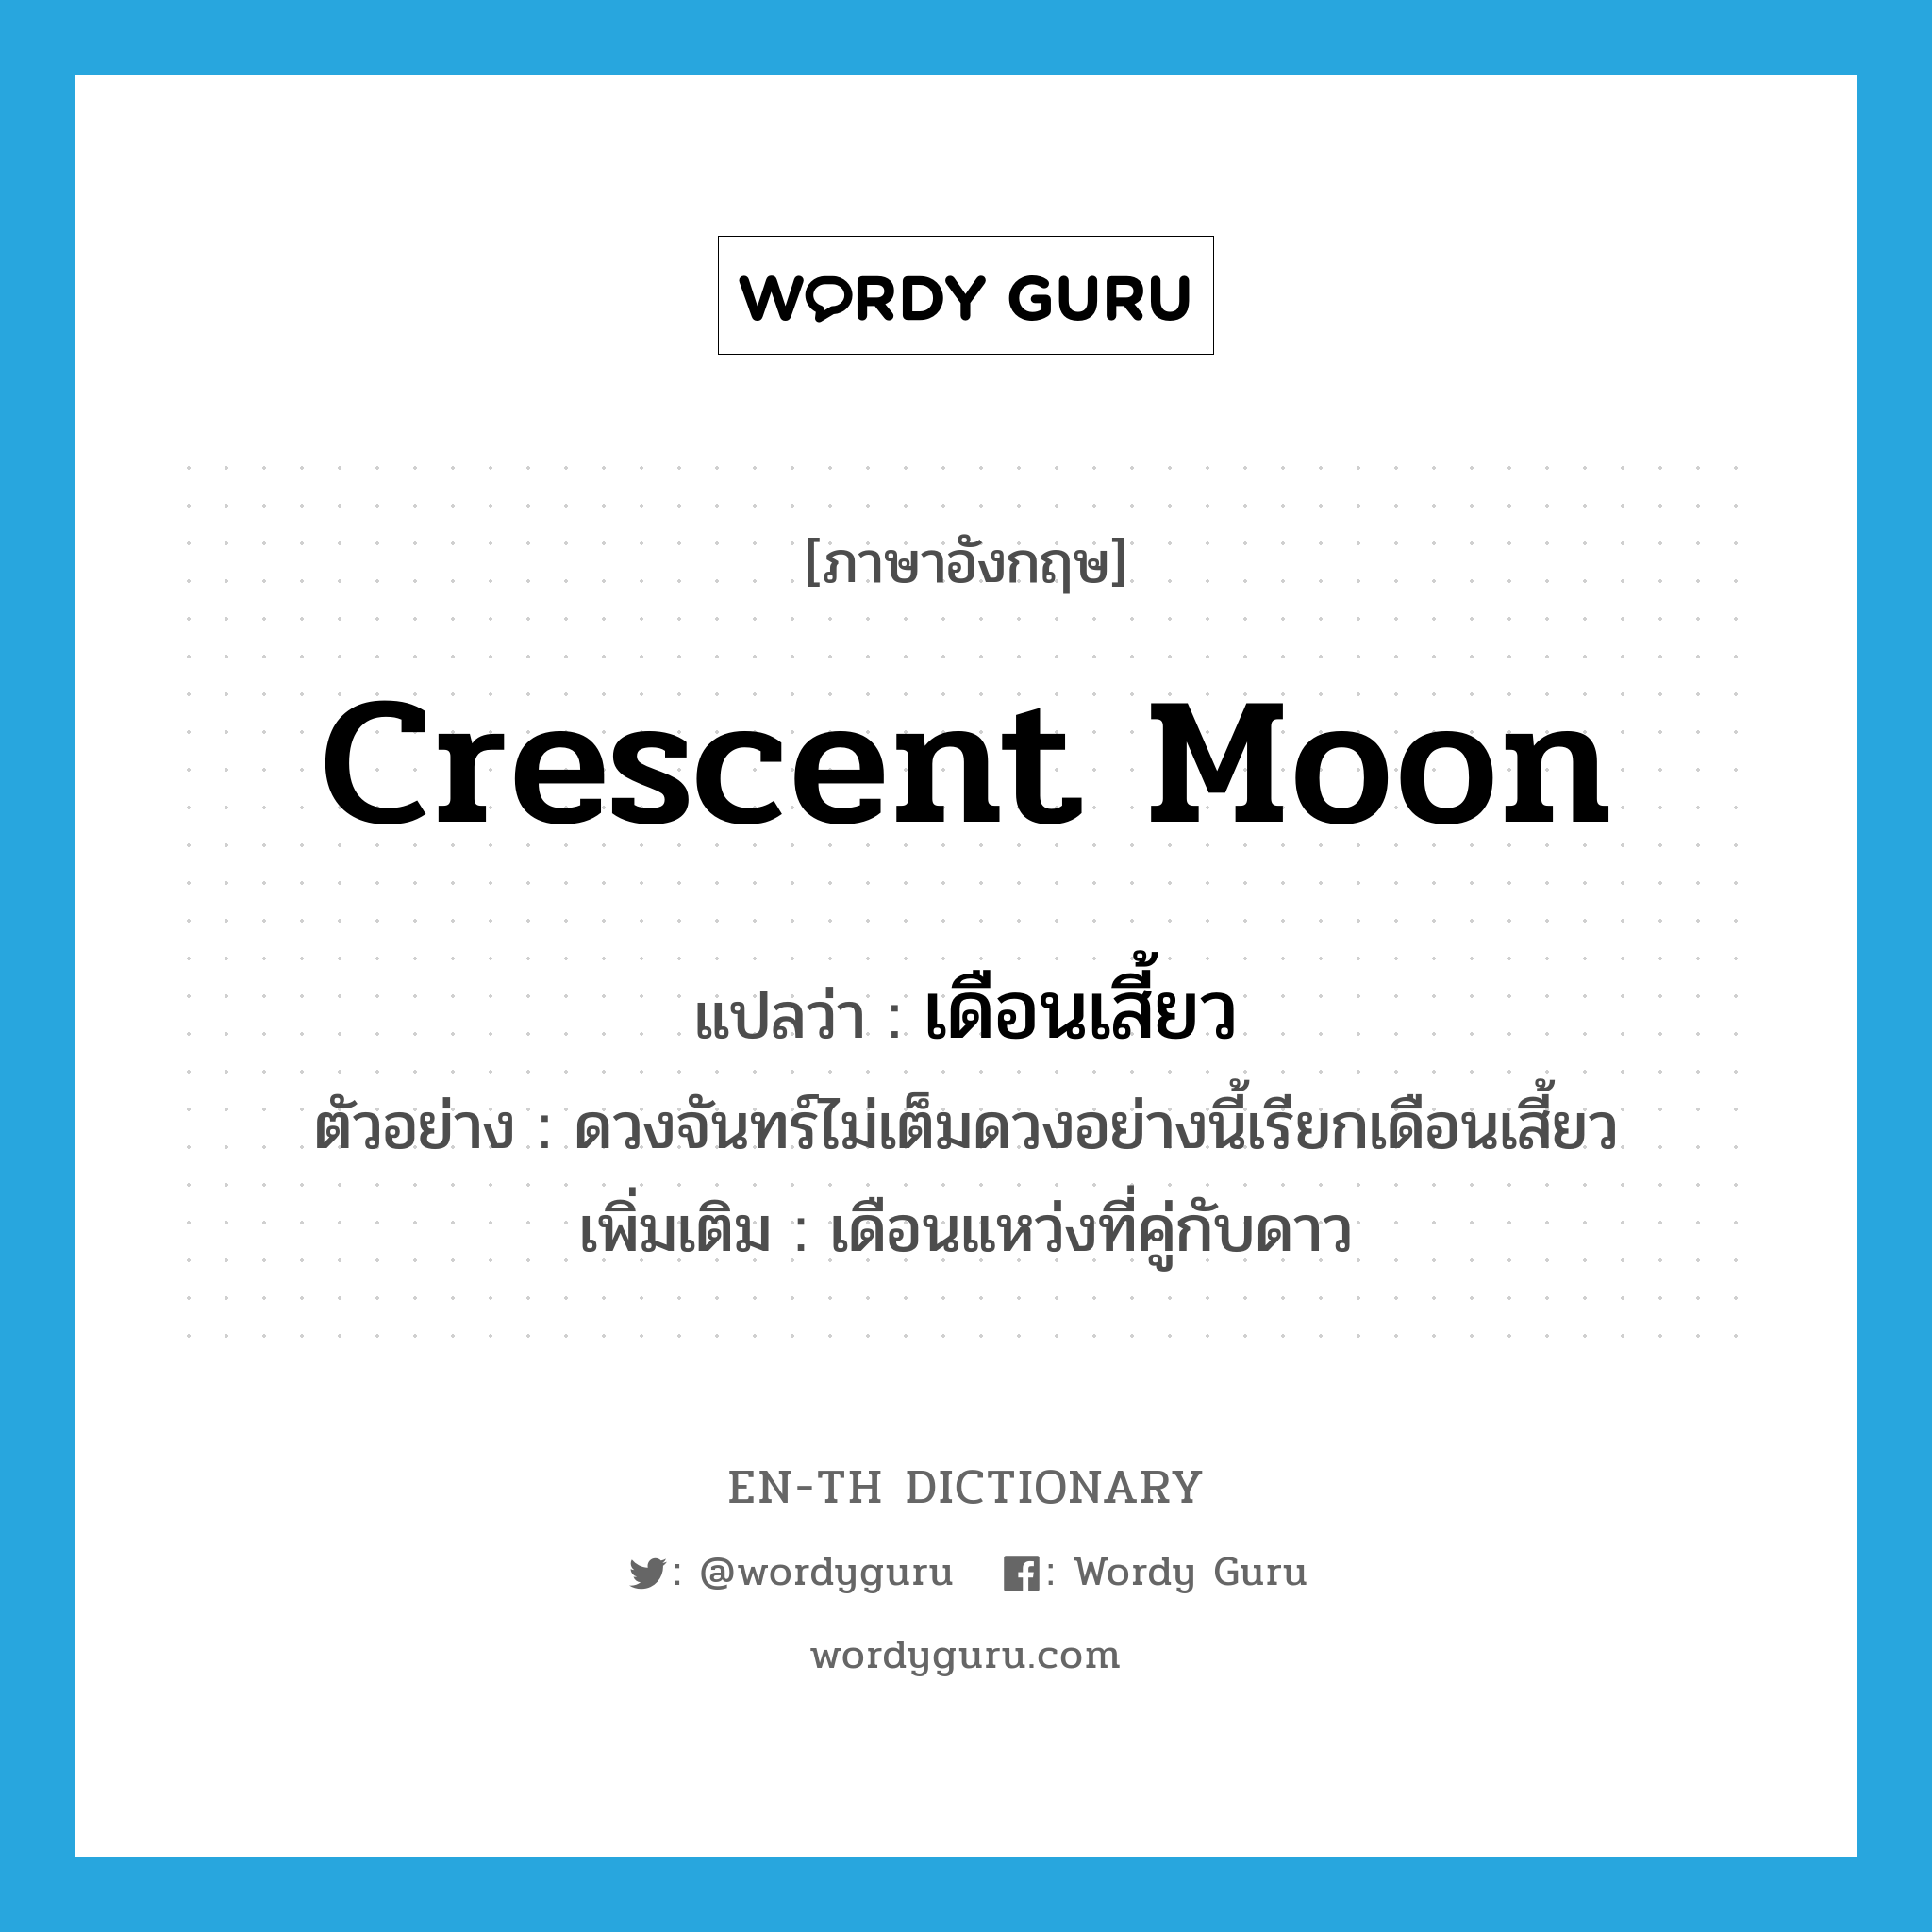 เดือนเสี้ยว ภาษาอังกฤษ?, คำศัพท์ภาษาอังกฤษ เดือนเสี้ยว แปลว่า crescent moon ประเภท N ตัวอย่าง ดวงจันทร์ไม่เต็มดวงอย่างนี้เรียกเดือนเสี้ยว เพิ่มเติม เดือนแหว่งที่คู่กับดาว หมวด N